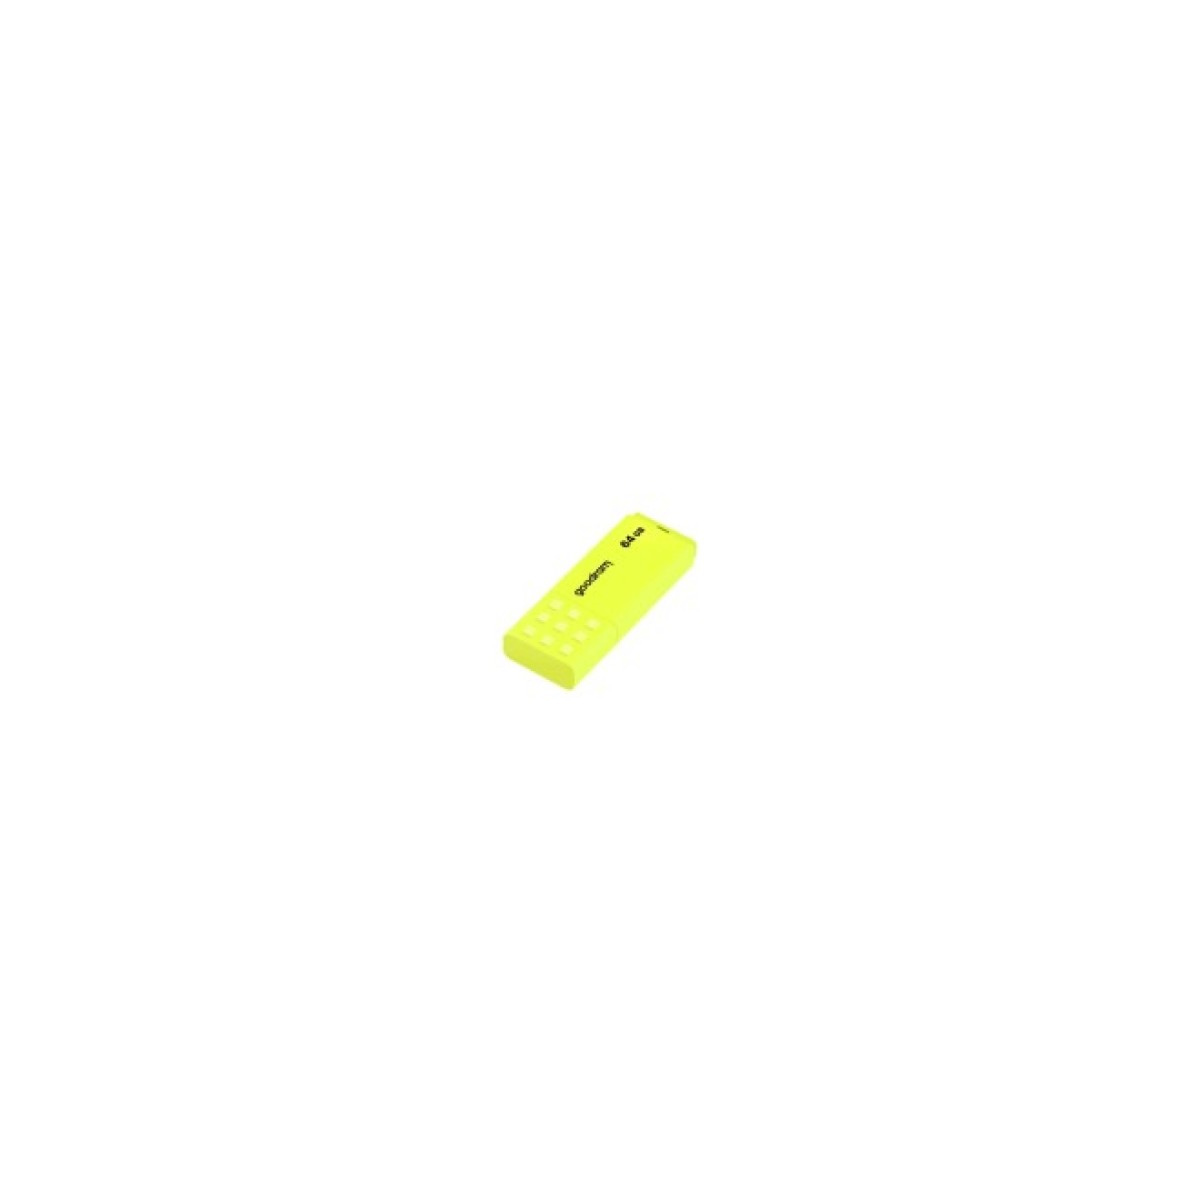 USB флеш накопичувач Goodram 32GB UME2 Yellow USB 2.0 (UME2-0320Y0R11) 256_256.jpg